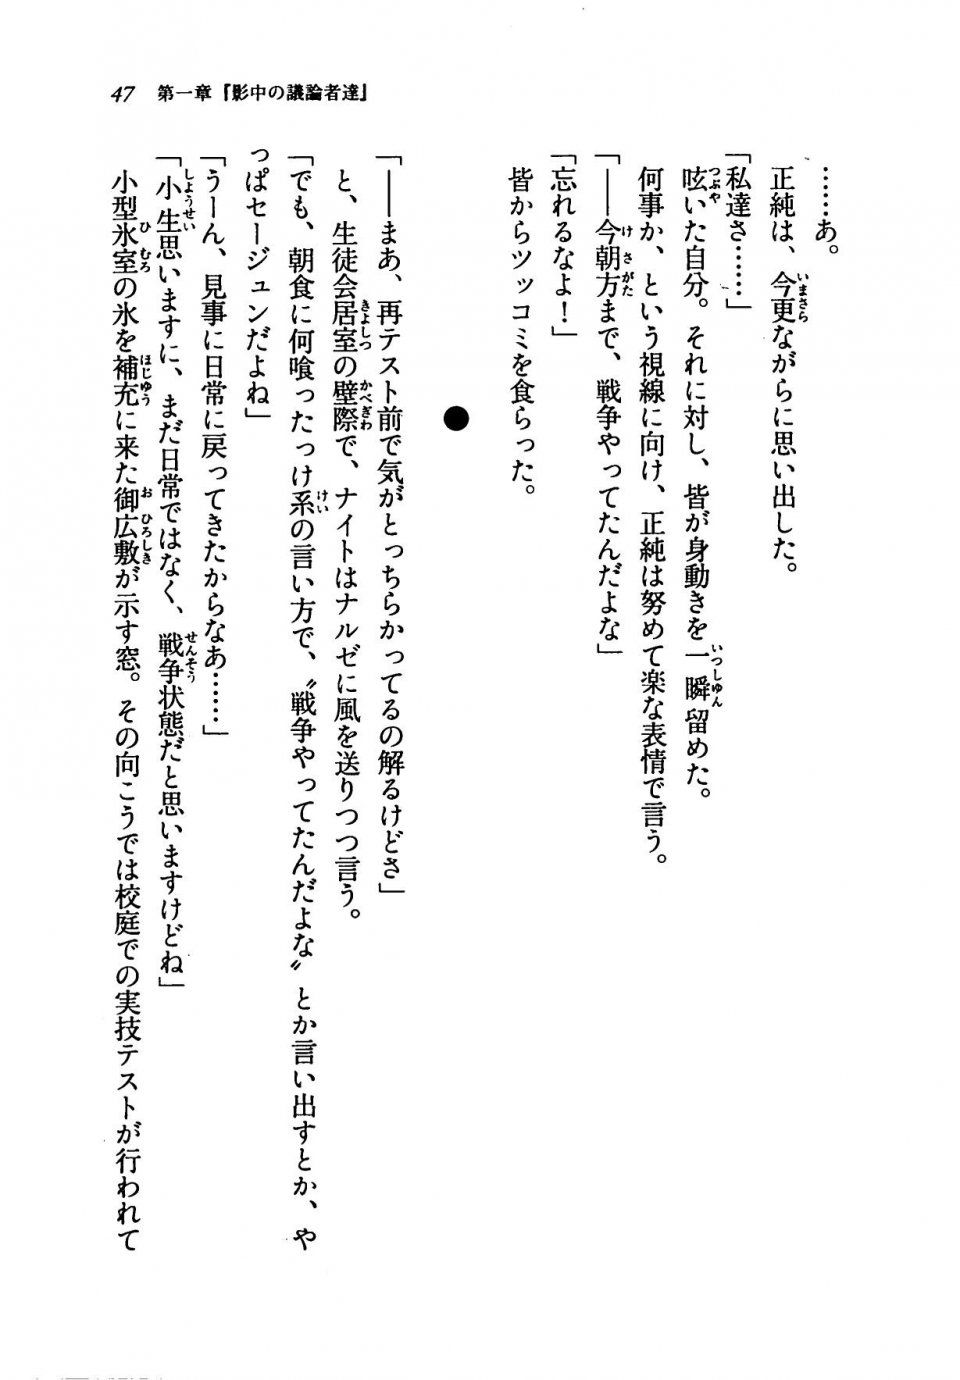 Kyoukai Senjou no Horizon LN Vol 19(8A) - Photo #47